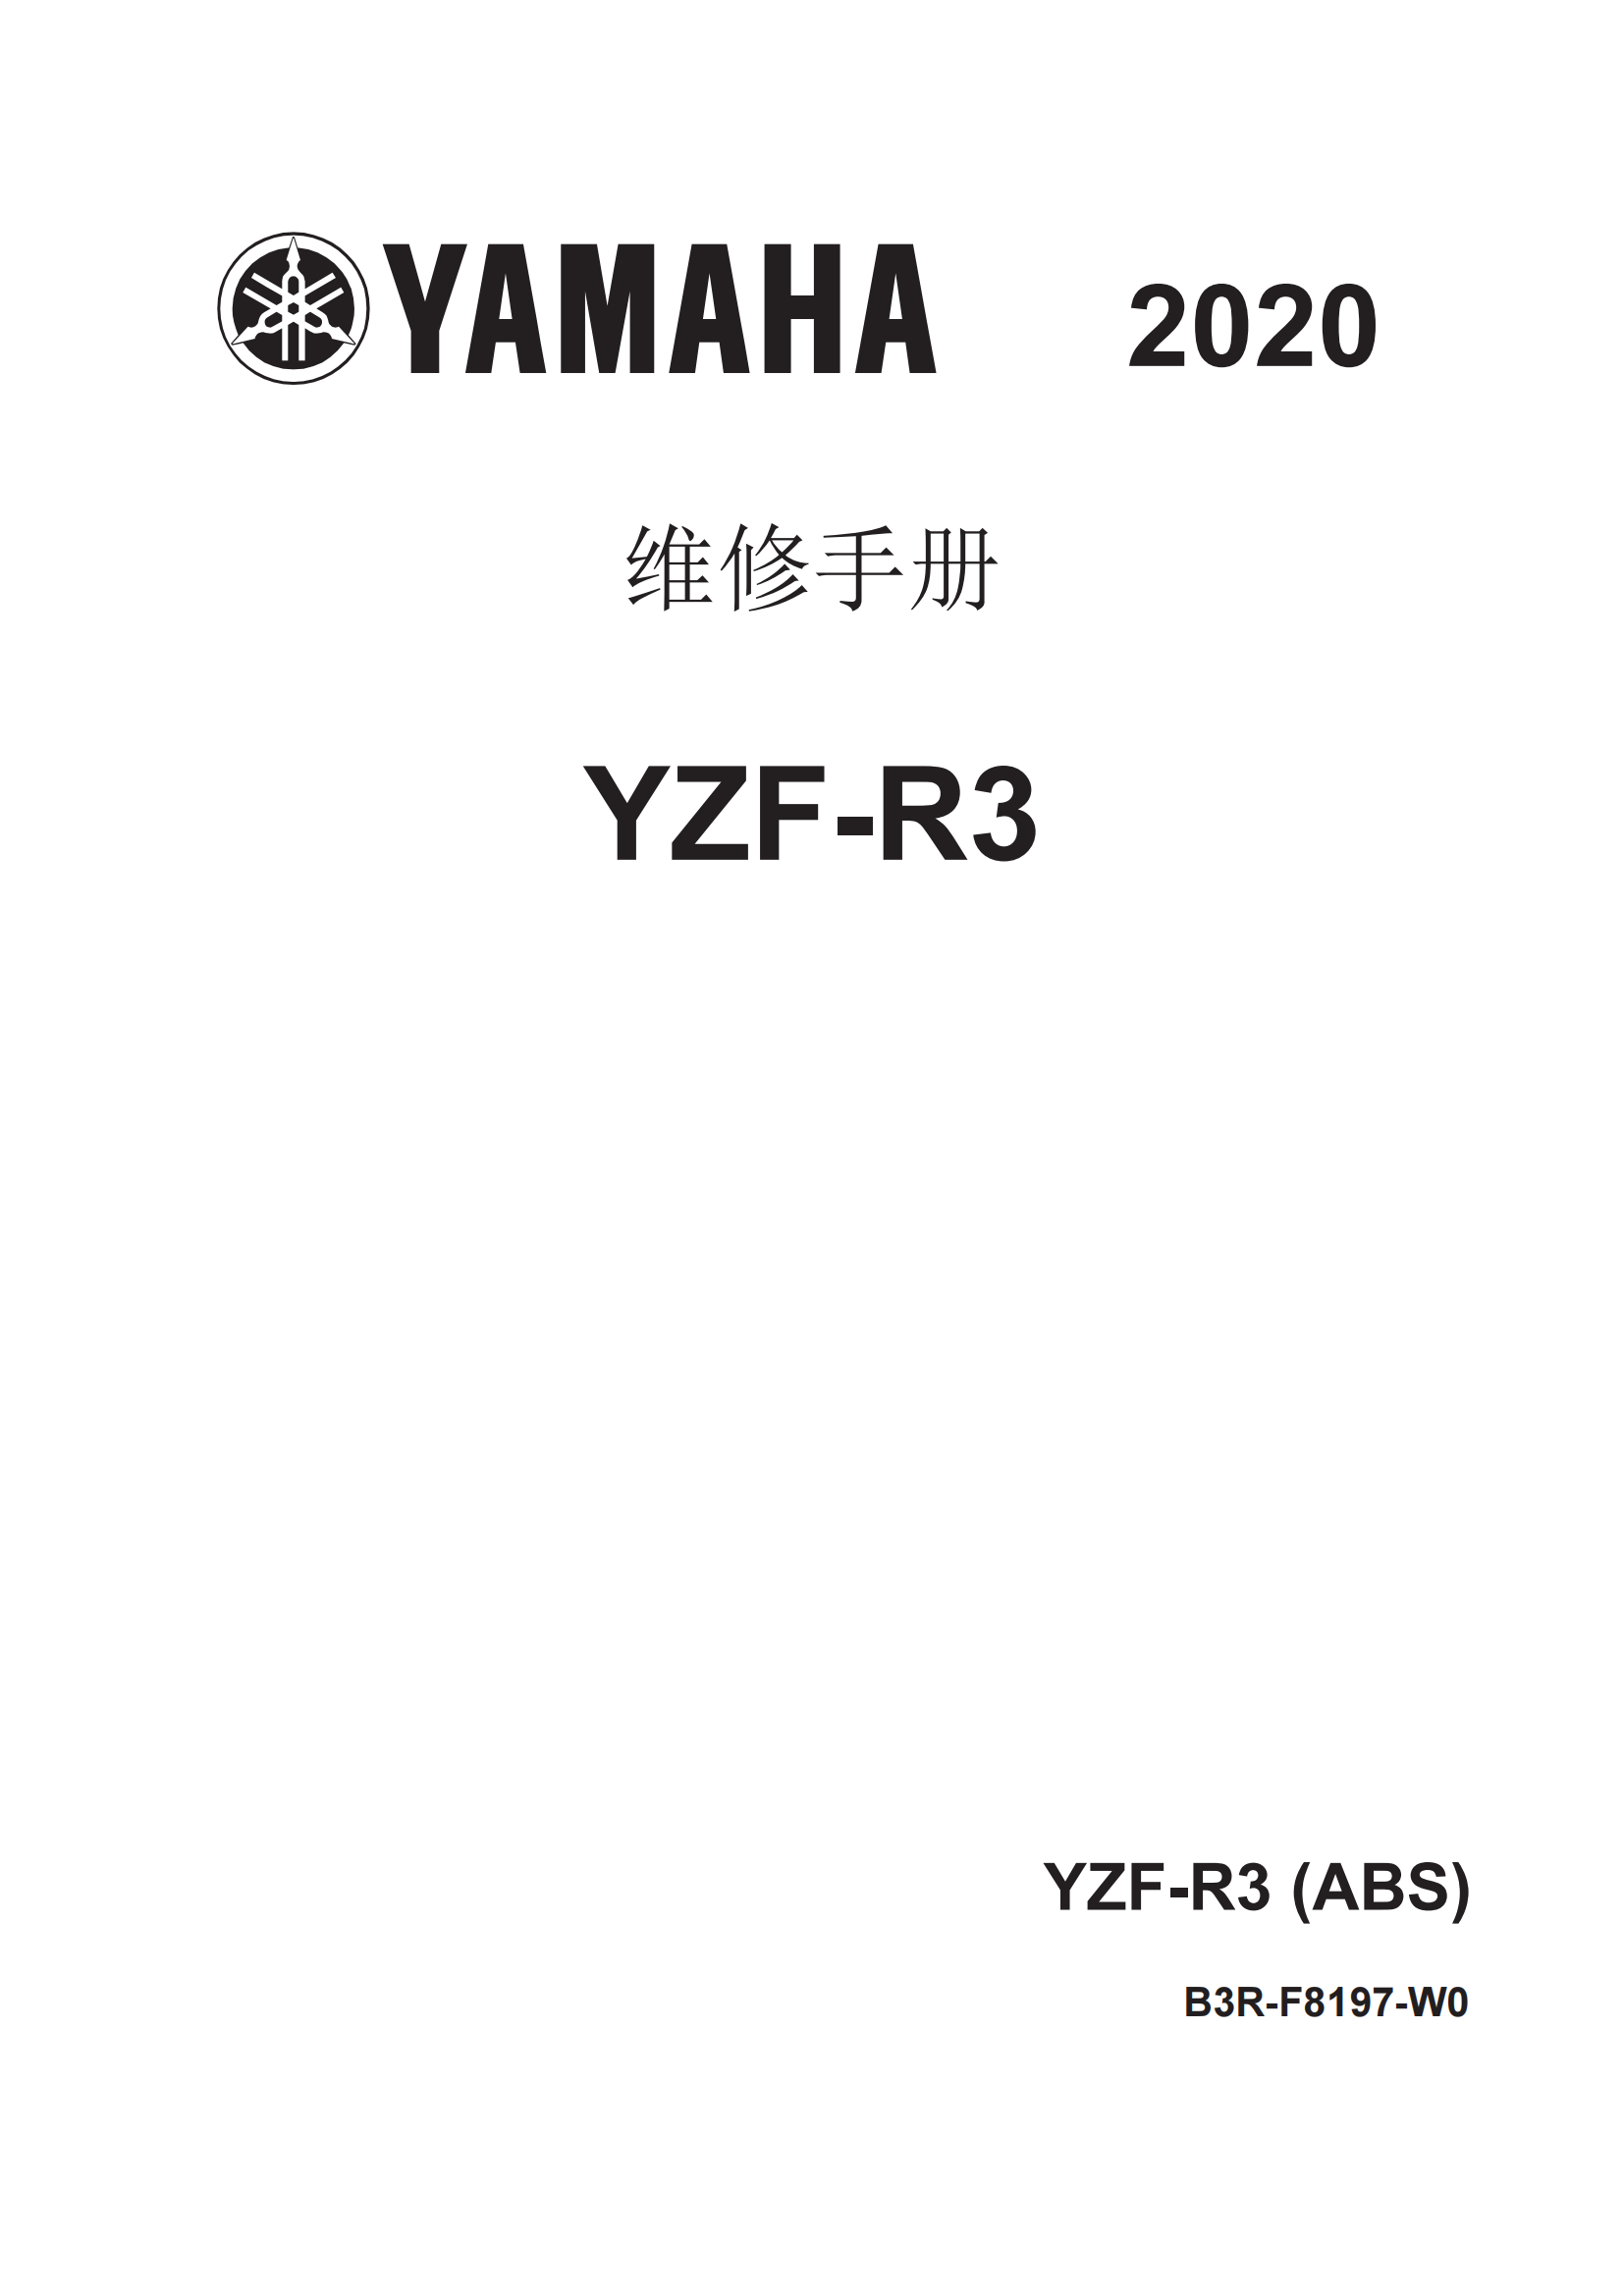 简体中文2020-2021年雅马哈r3维修手册雅马哈yzfr3 yamaha yzf-r3维修手册插图